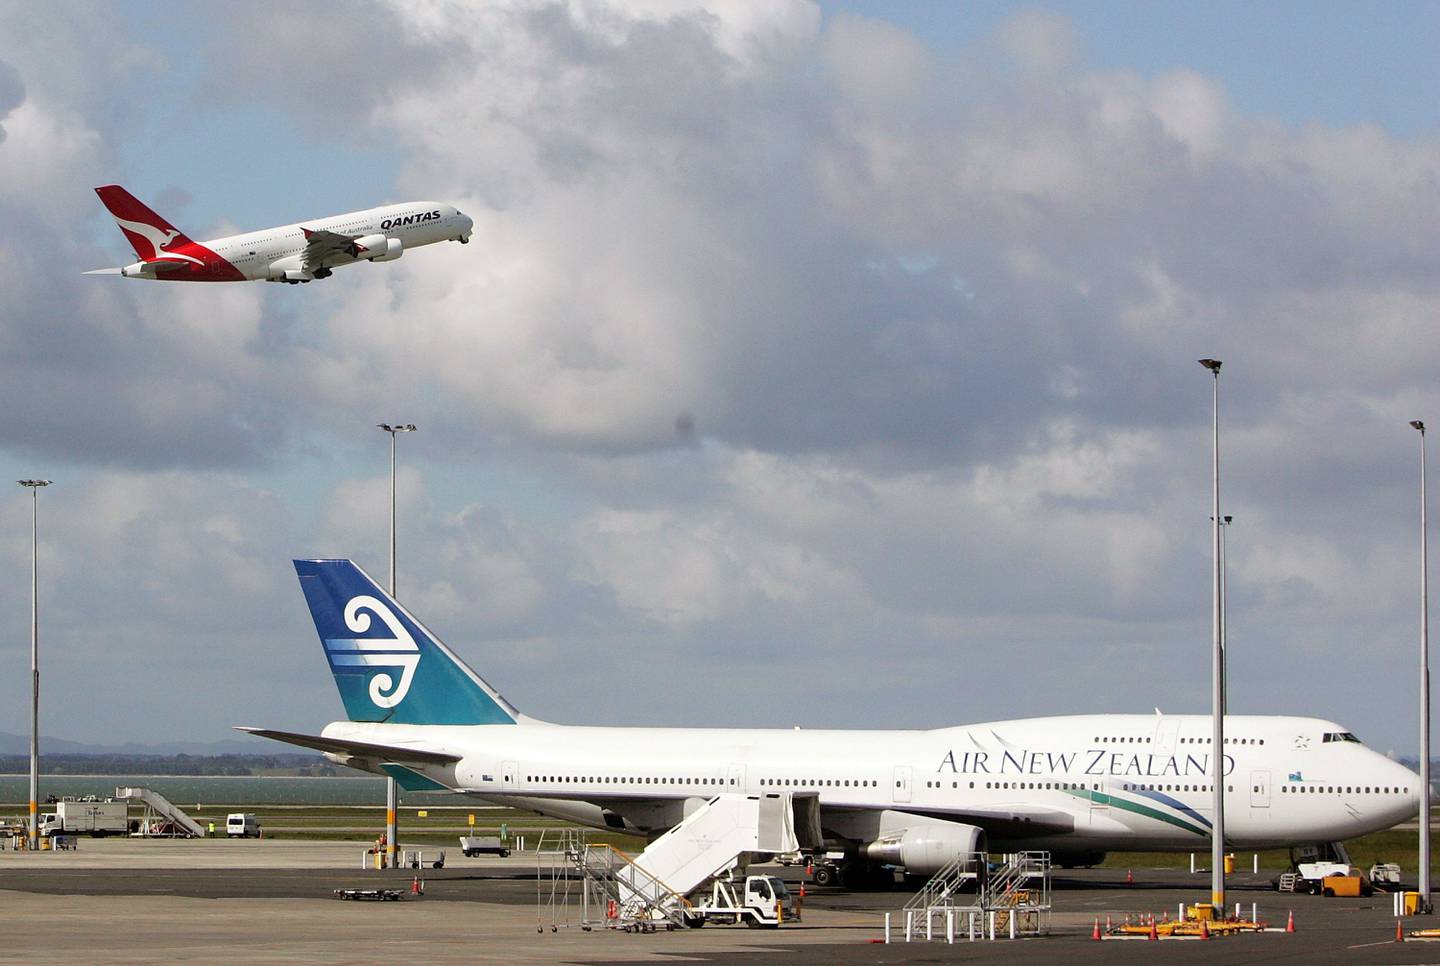 Airbus intentó romper el dominio de Boeing en el mercado de los jumbos con el A380 de dos pisos, en la imagen despegando con un 747 en primer plano. Pero el avión nunca consiguió suficientes pedidos y el fabricante europeo canceló el modelo en 2019. Fotógrafo: Tim Hales/Getty Imagesdfd